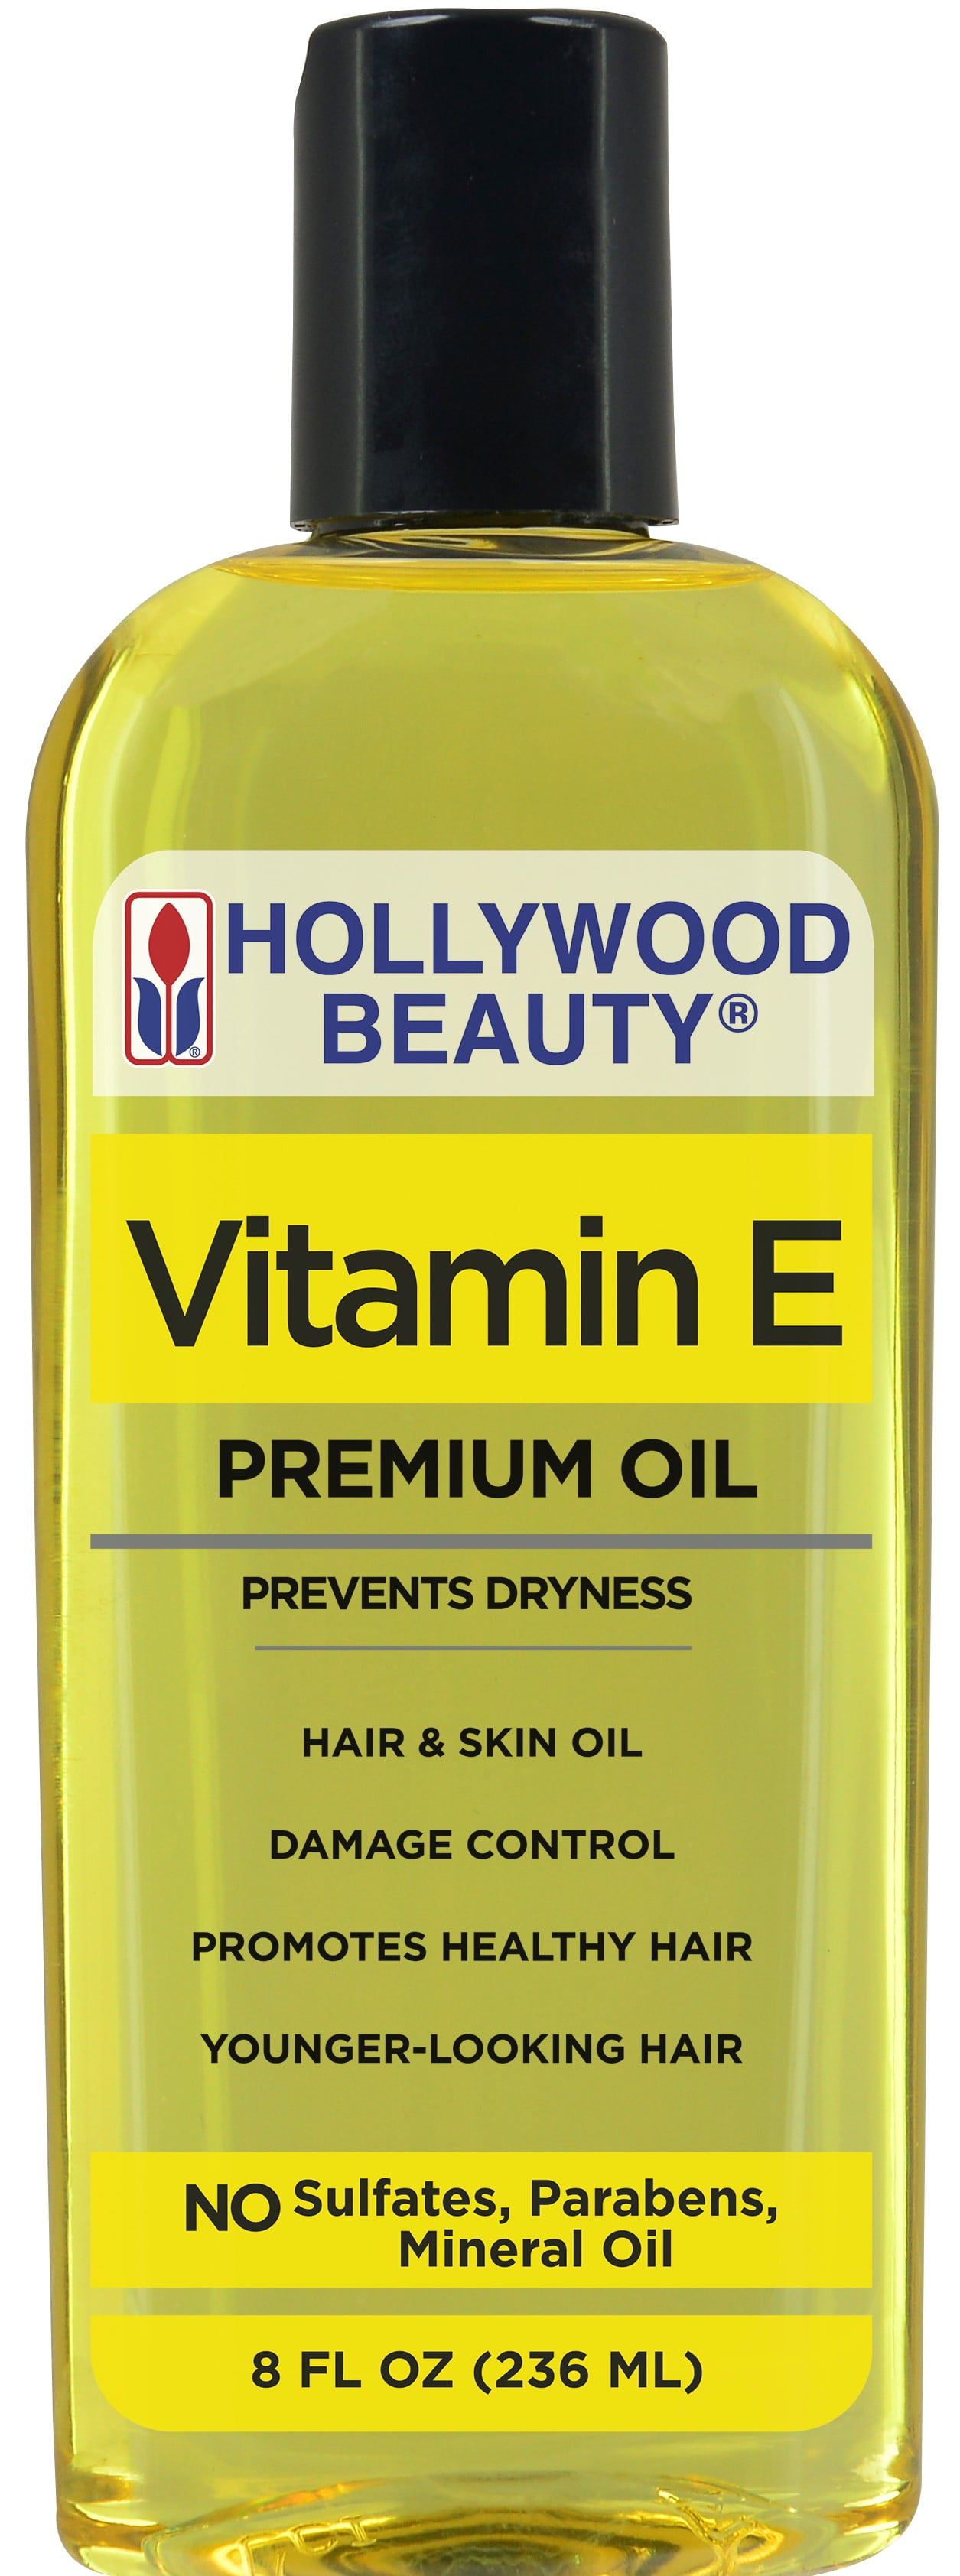 Hollywood Beauty Vitamin E Oil Hair And Skin Oil 8 Oz